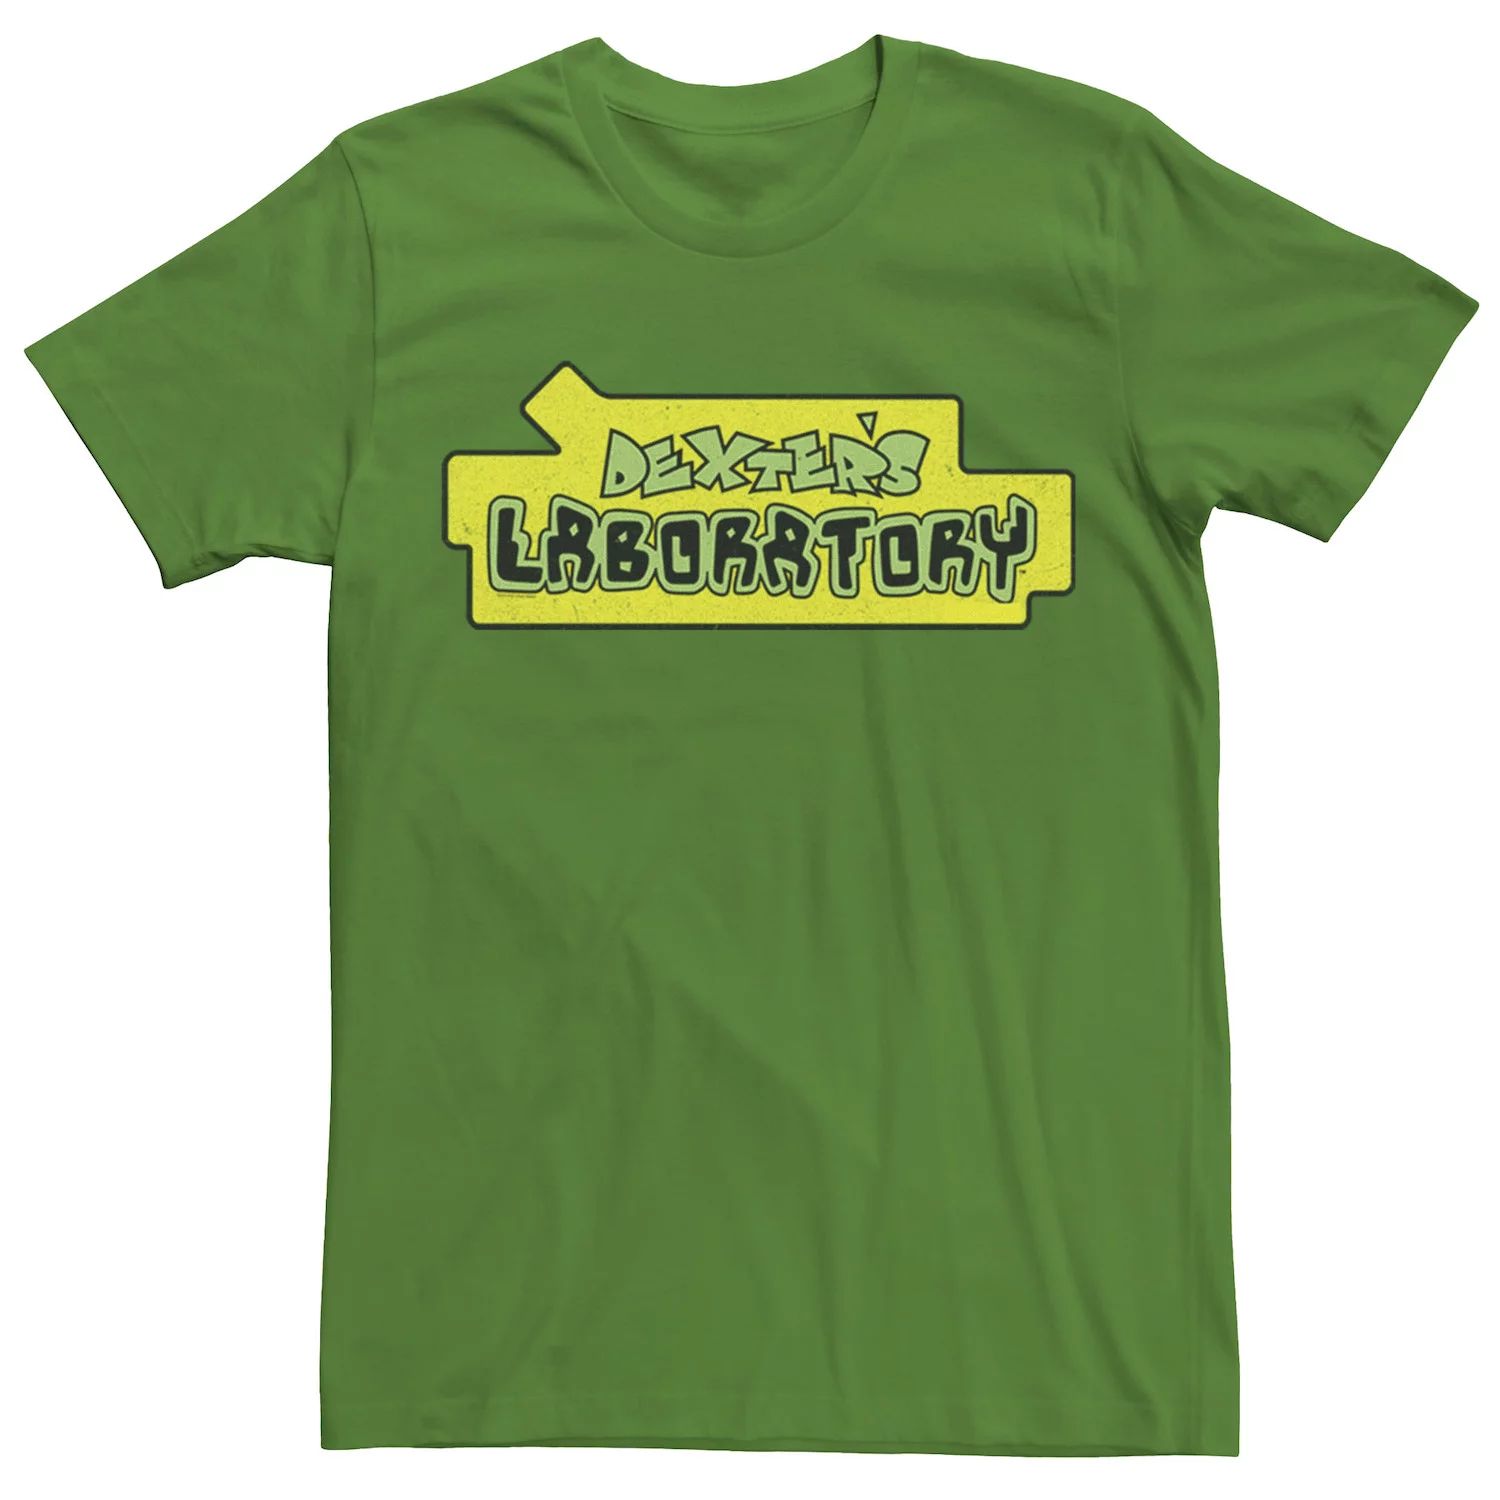 Мужская футболка с оригинальным логотипом Dexter's Laboratory Licensed Character